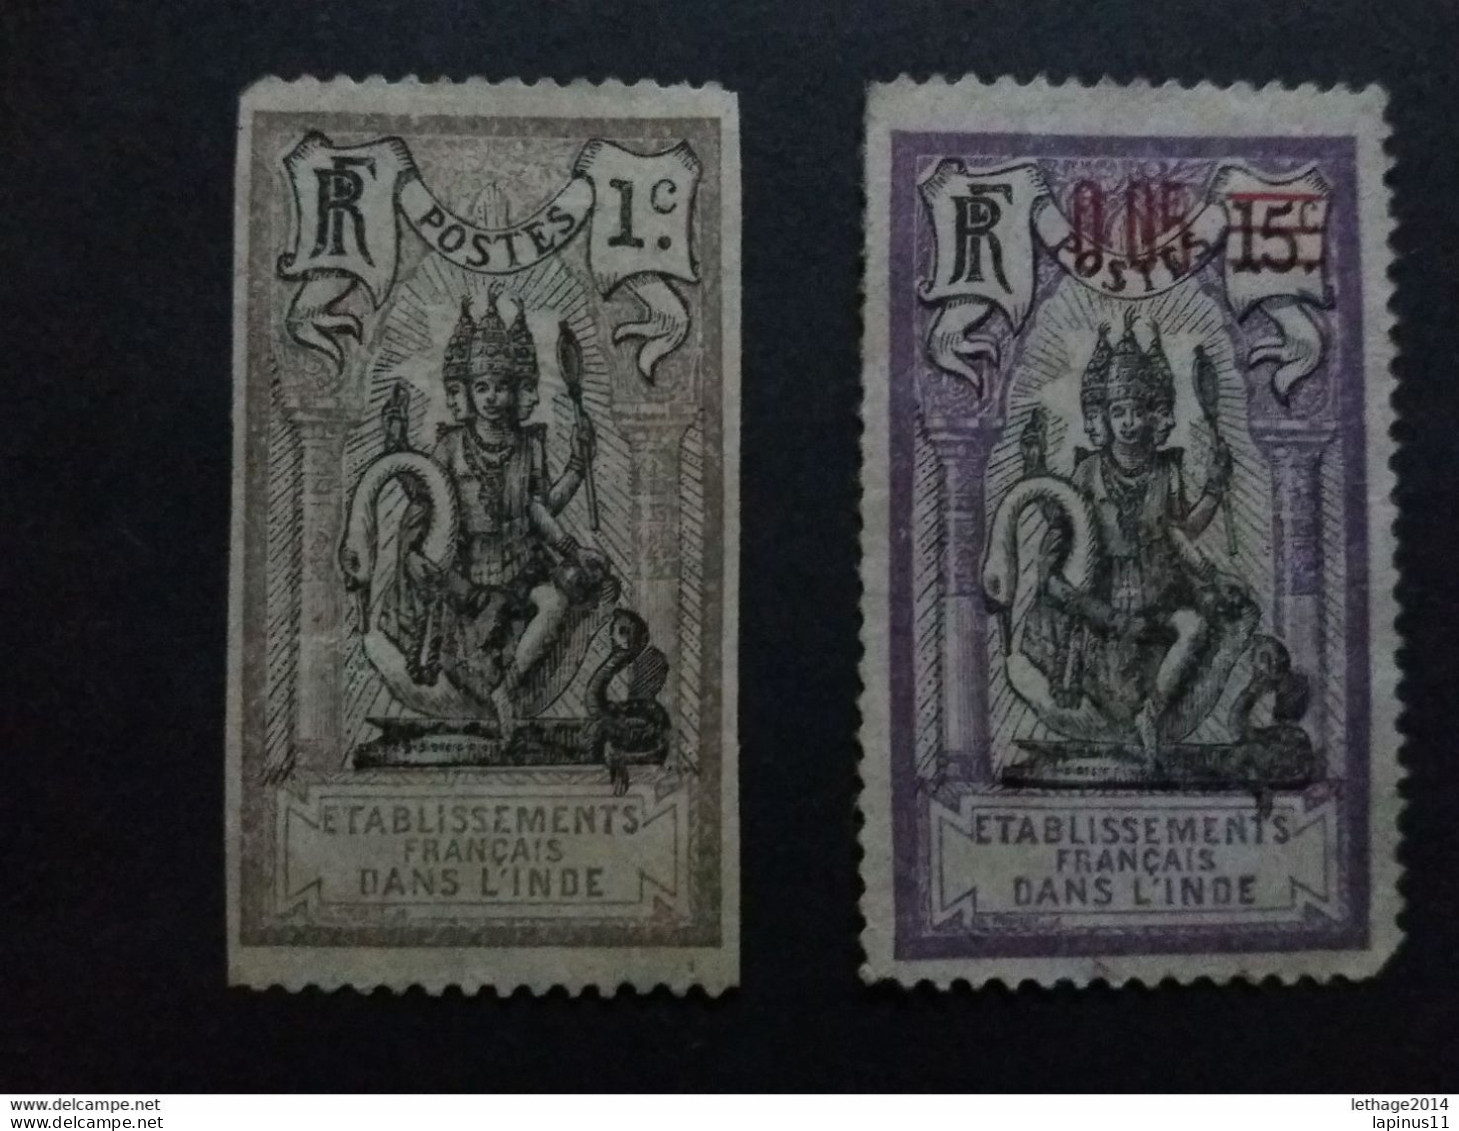 COLONIE FRANCIA ETABLISSEMENTS FRANCAISE INDE INDIA 1914 - 1923 TYPOGRAPHIES - Oblitérés